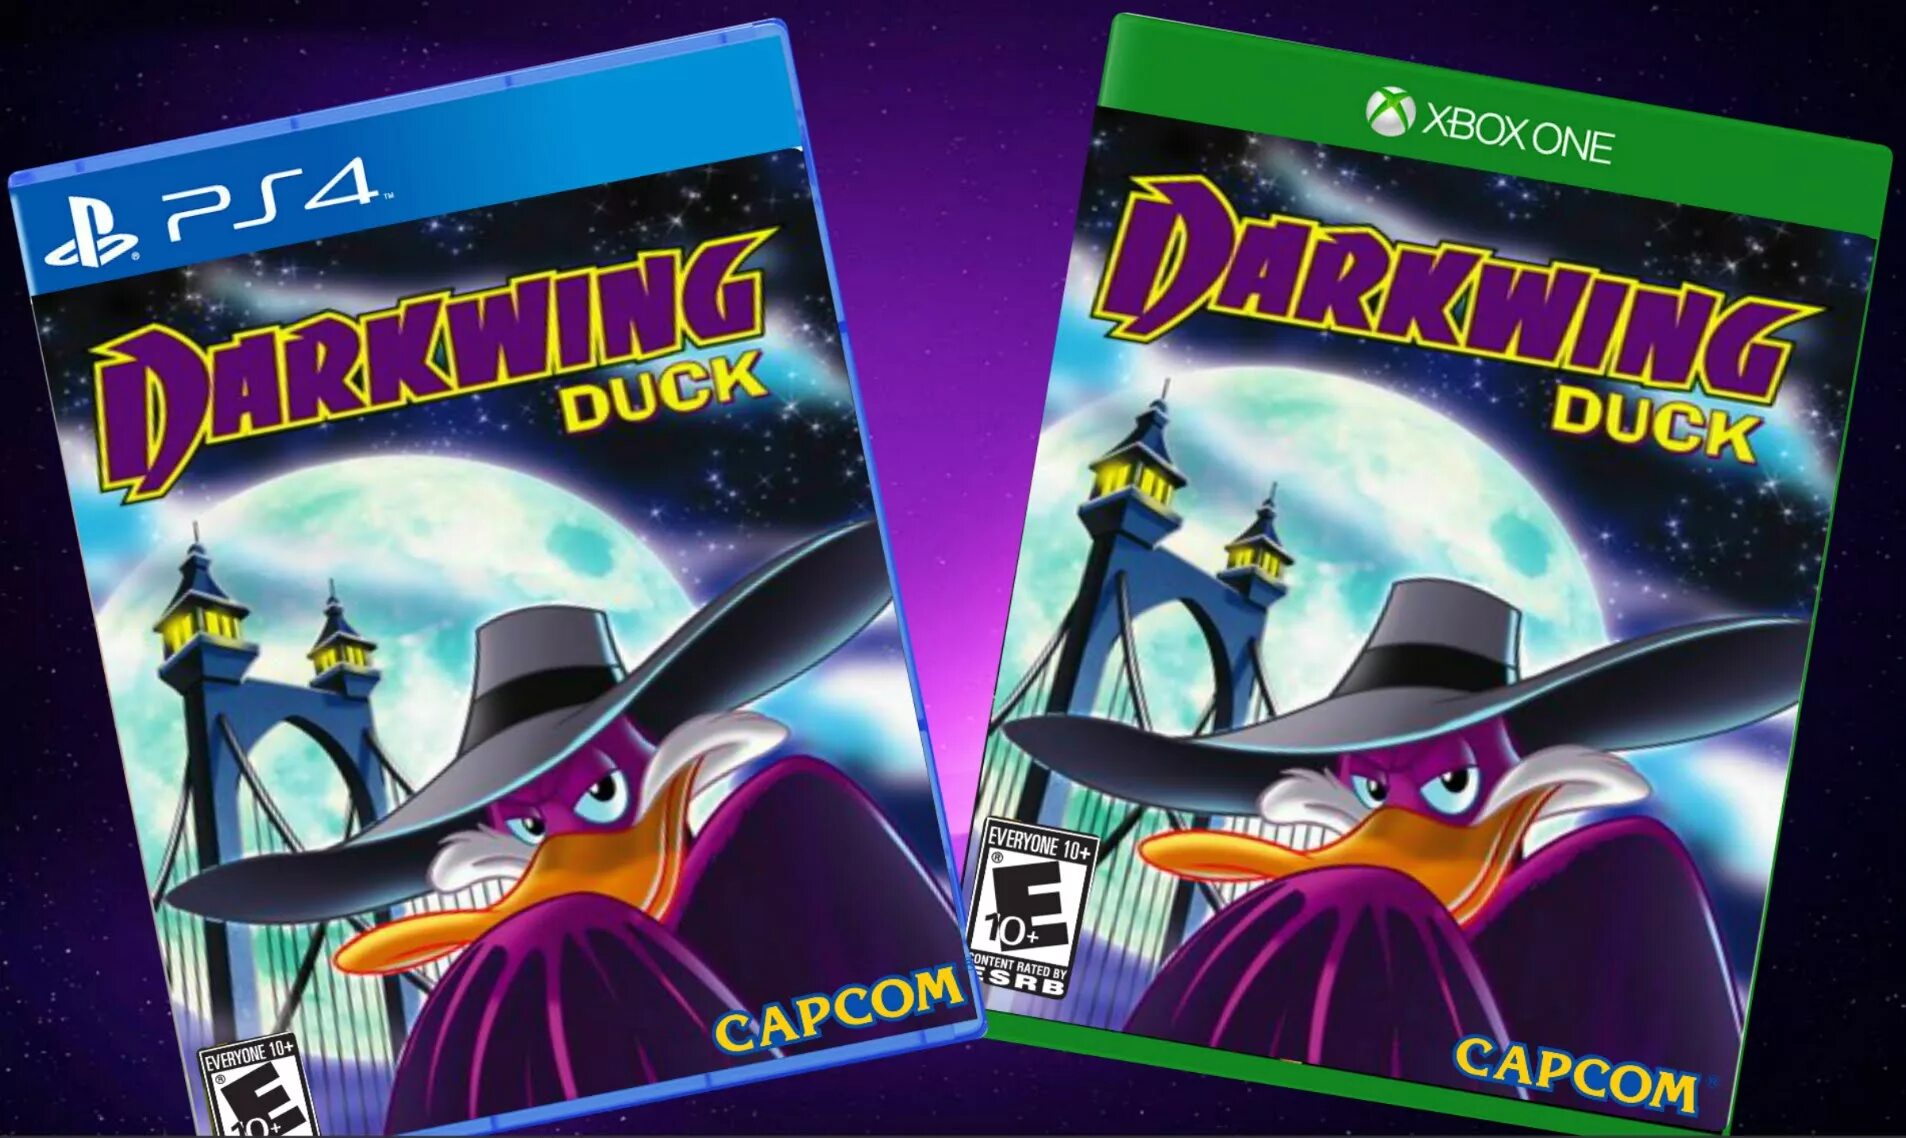 Darkwing duck capcom. Darkwing Duck игра. Черный плащ игра ремастер. Черный плащ DVD. Черный плащ игрушка.